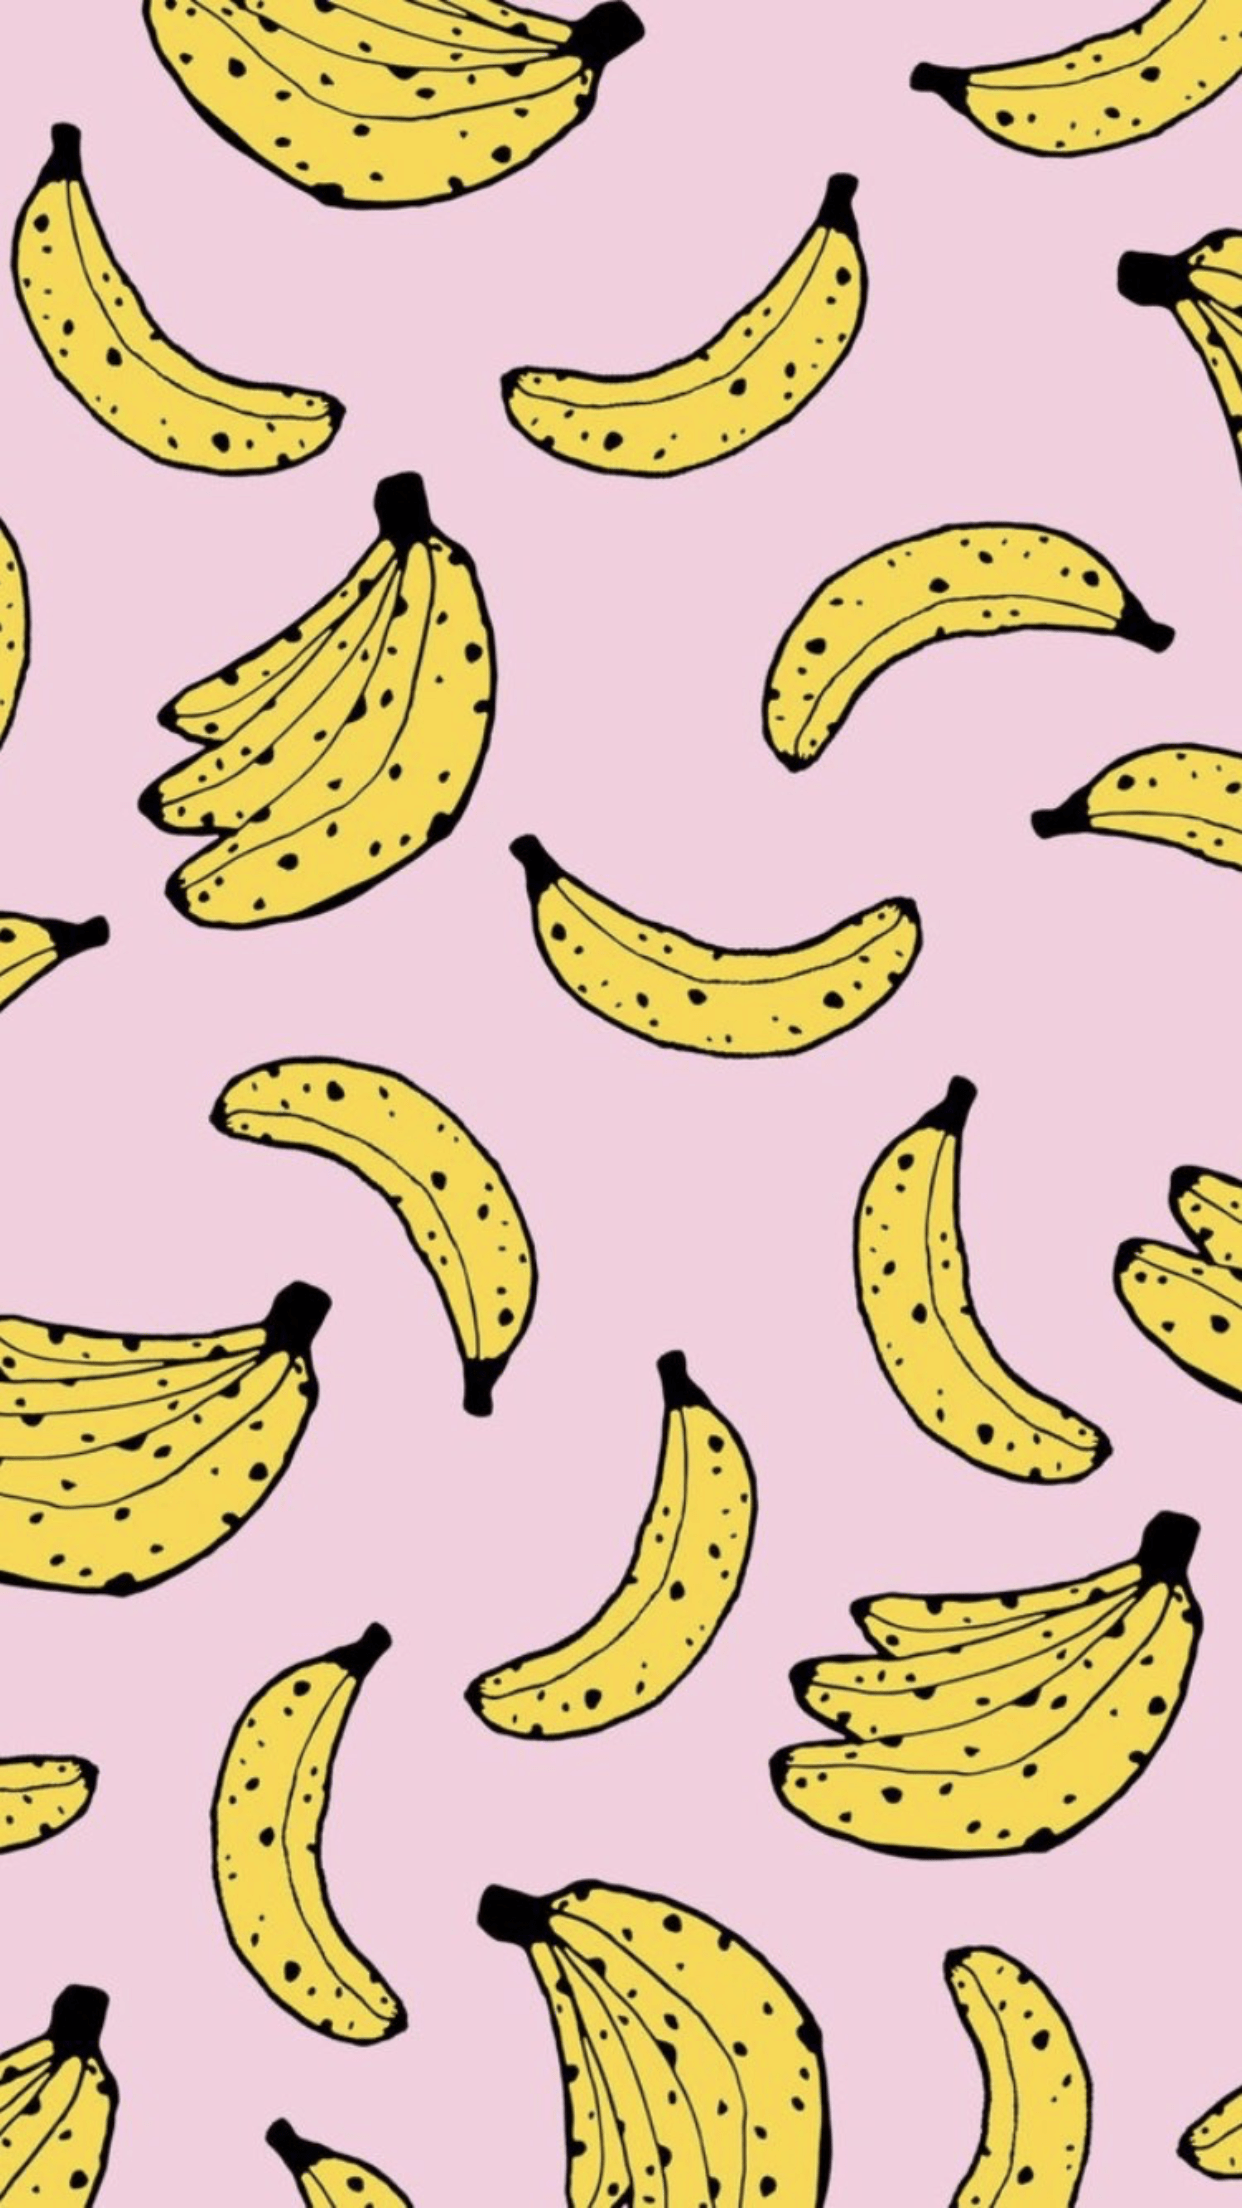 Banana. Wall collage, Banana wallpaper, iPhone background wallpaper